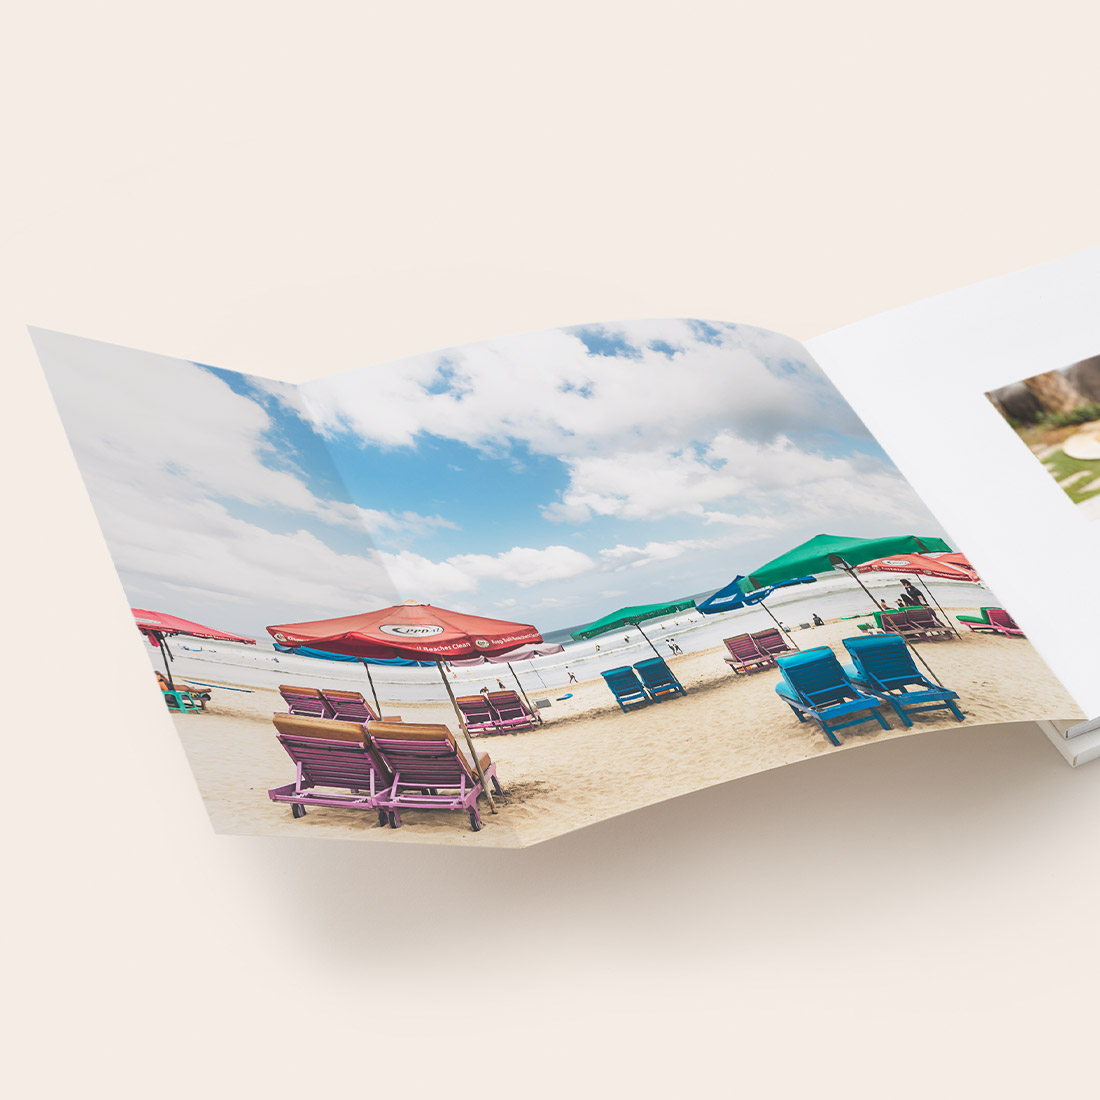 Softcover-Fotobuch mit geöffnetem Panorama-Buchumschlag.